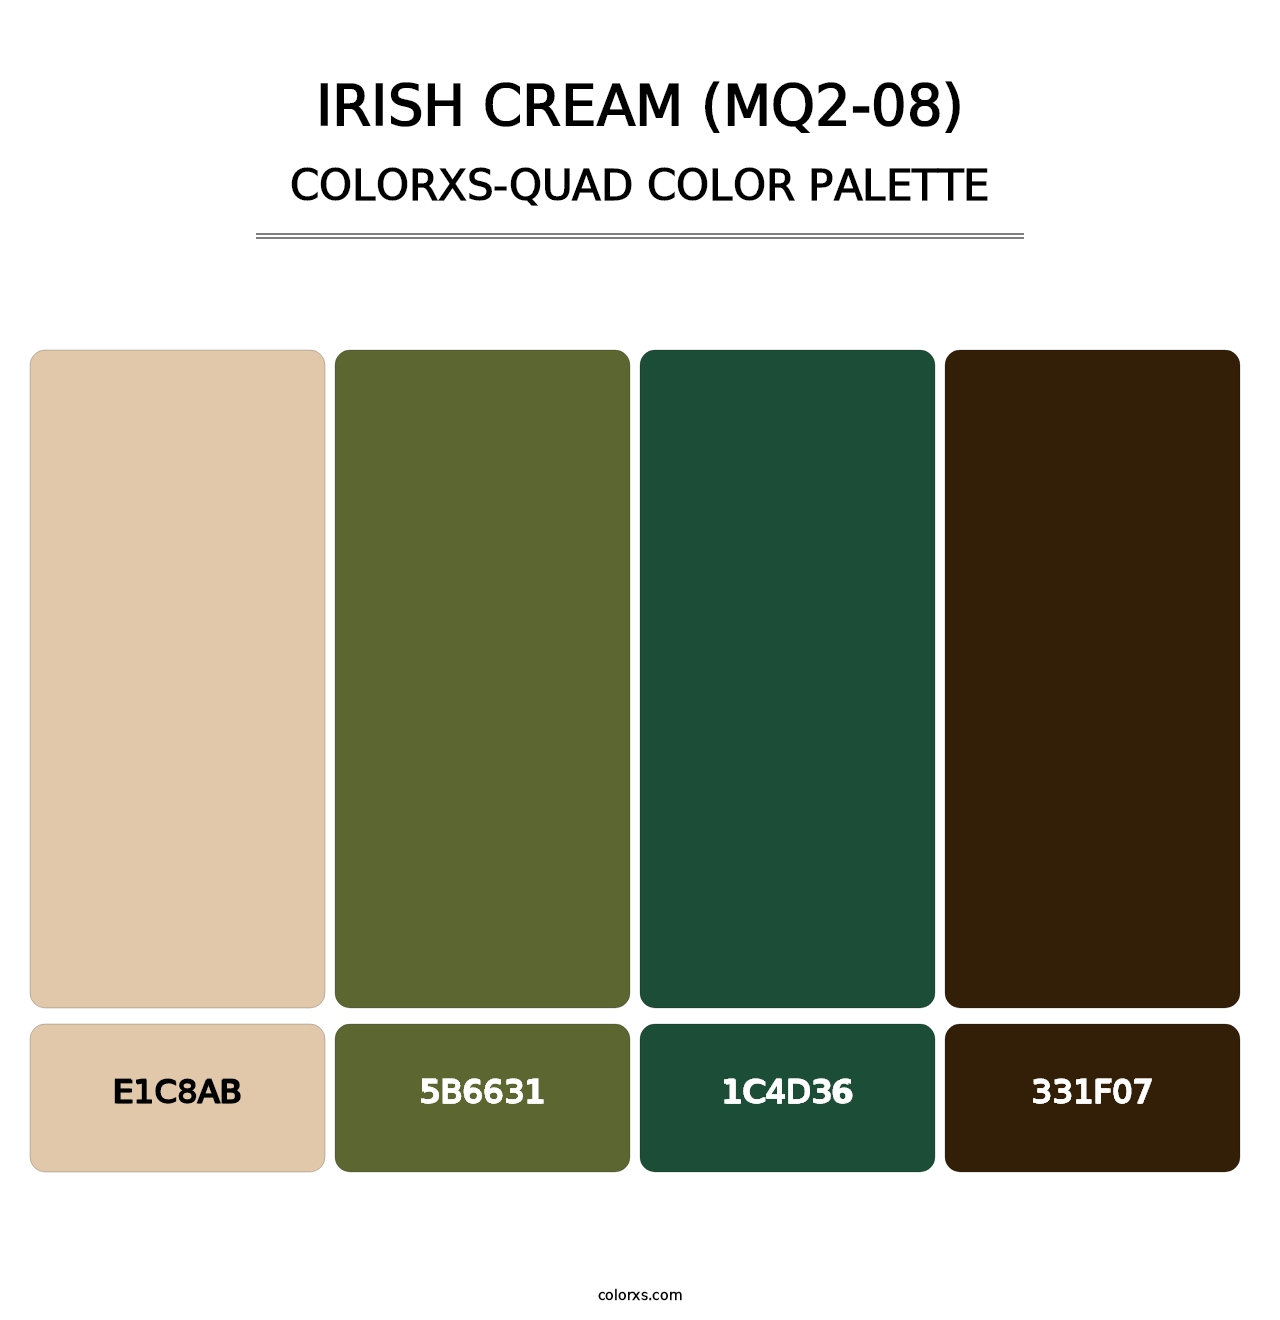 Irish Cream (MQ2-08) - Colorxs Quad Palette